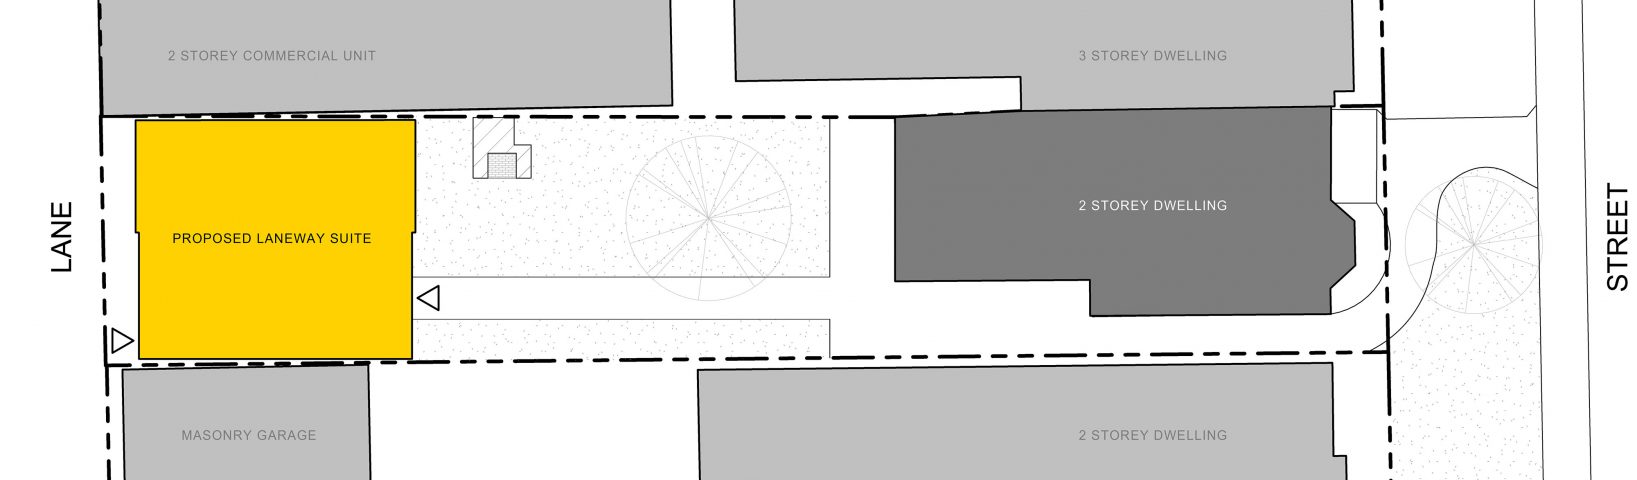 TBLH-Design-7 floorplan